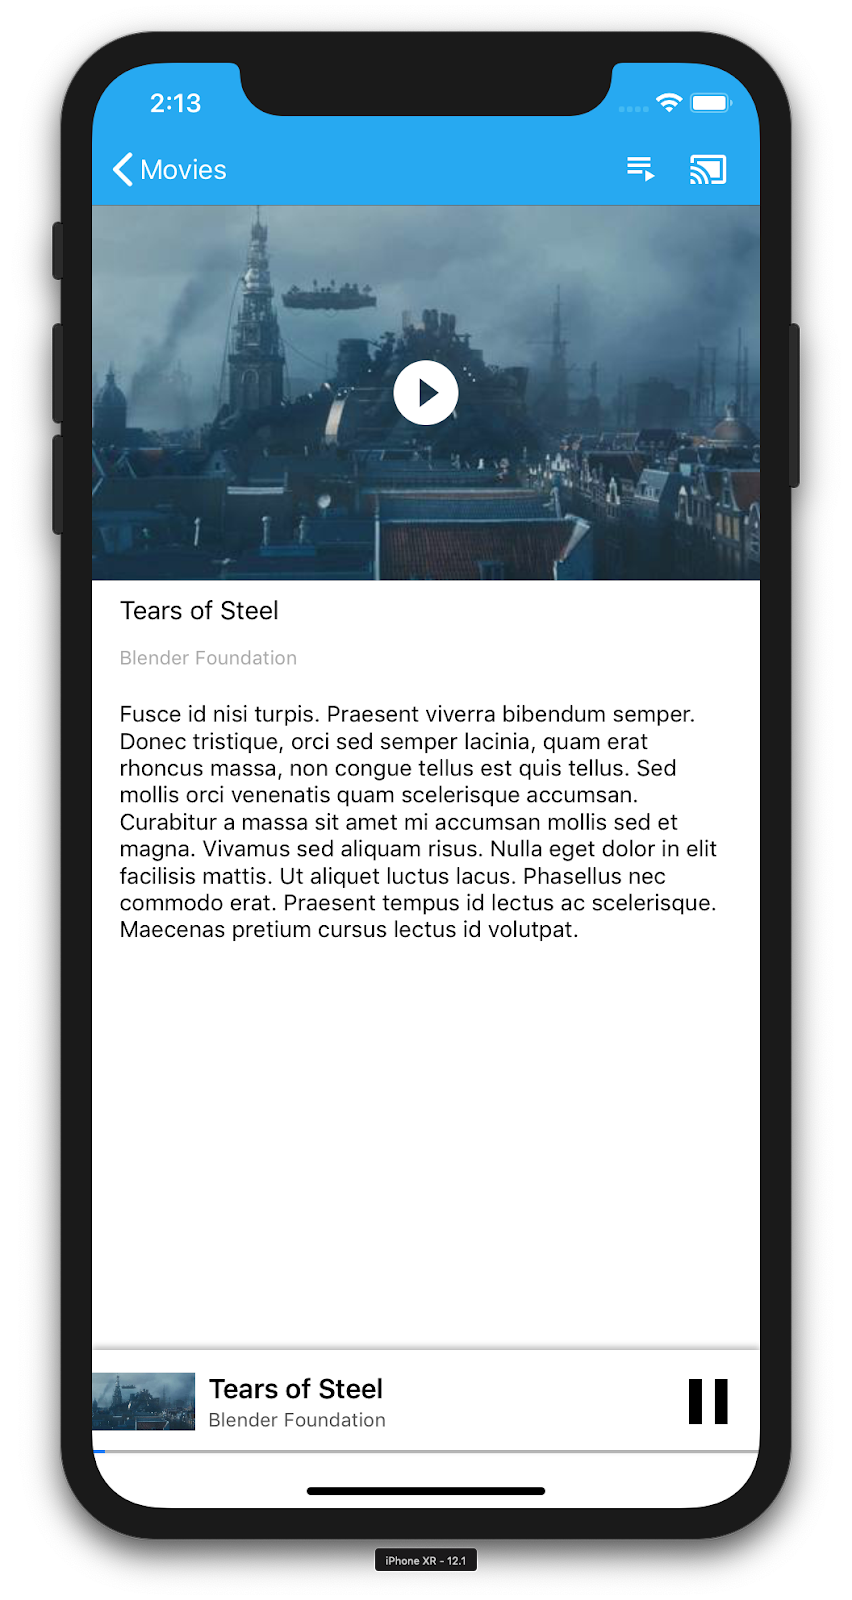 运行 CastVideos 应用的 iPhone 的图示，其中显示了特定视频的详细信息（“Tears of Steel”）。底部是迷你播放器